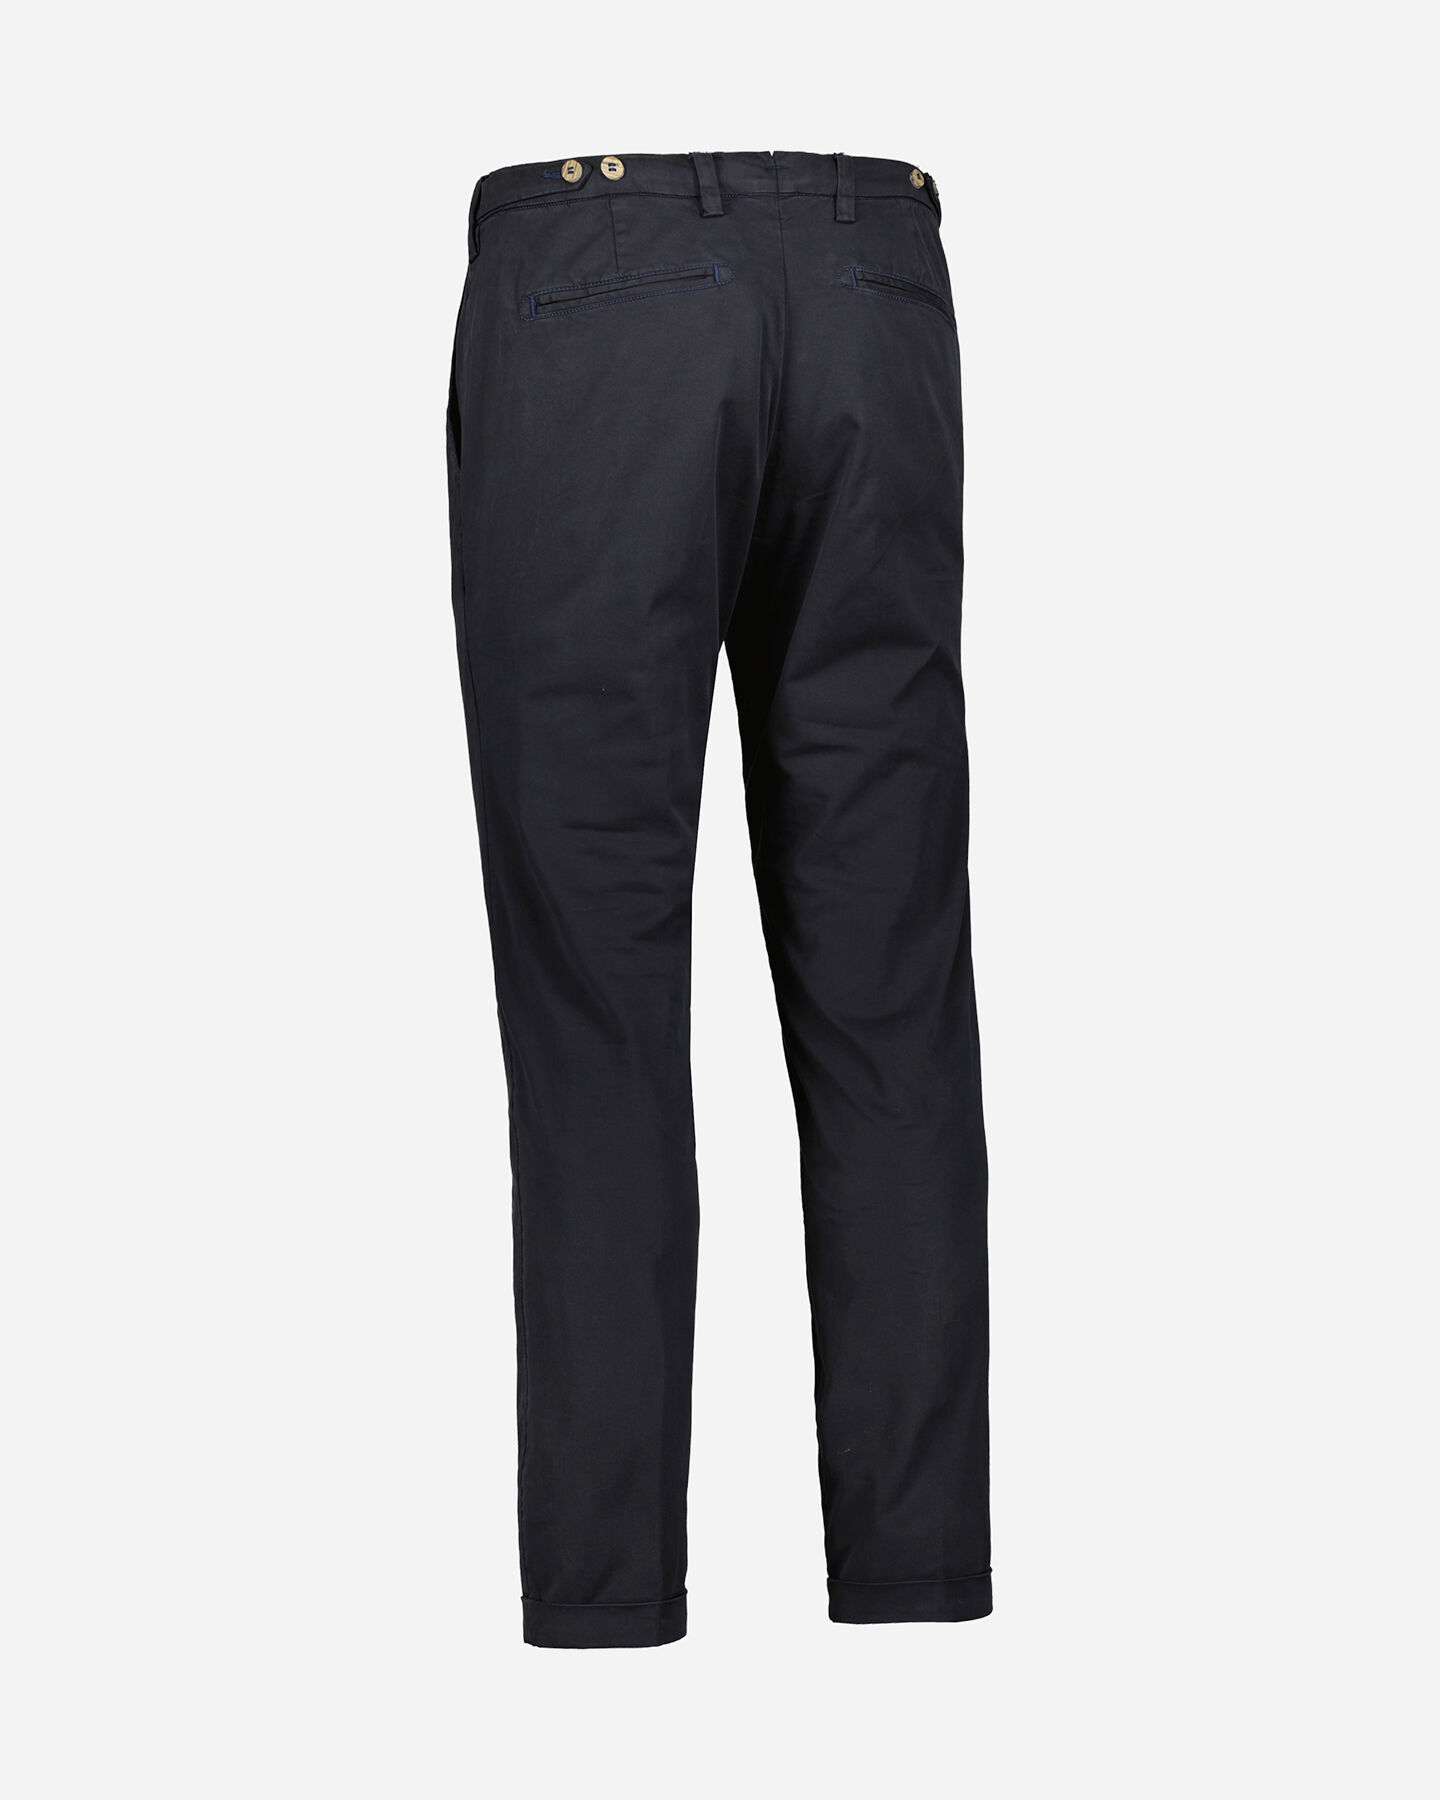  Pantalone BEST COMPANY MONTENAPOLEONE M S4122339|1020|46 scatto 4